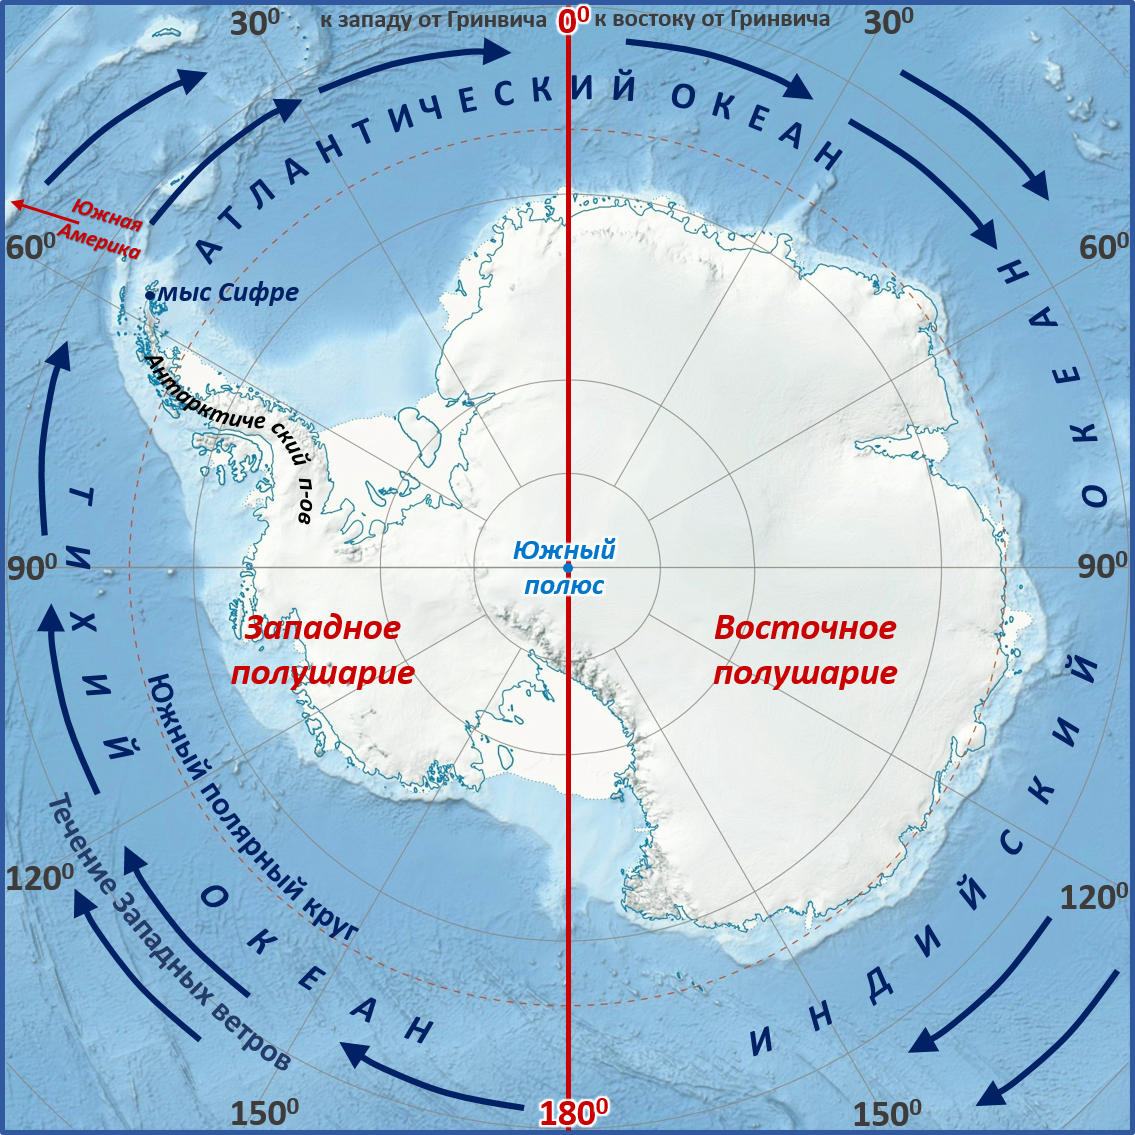 Мыс Сифре на карте Антарктиды. Моря: Амундсена, Беллинсгаузена, Росса, Уэдделла.. Мыс Сифре Антарктида. Южный полюс на карте Антарктиды. Атлантический океан географическое положение полушарие